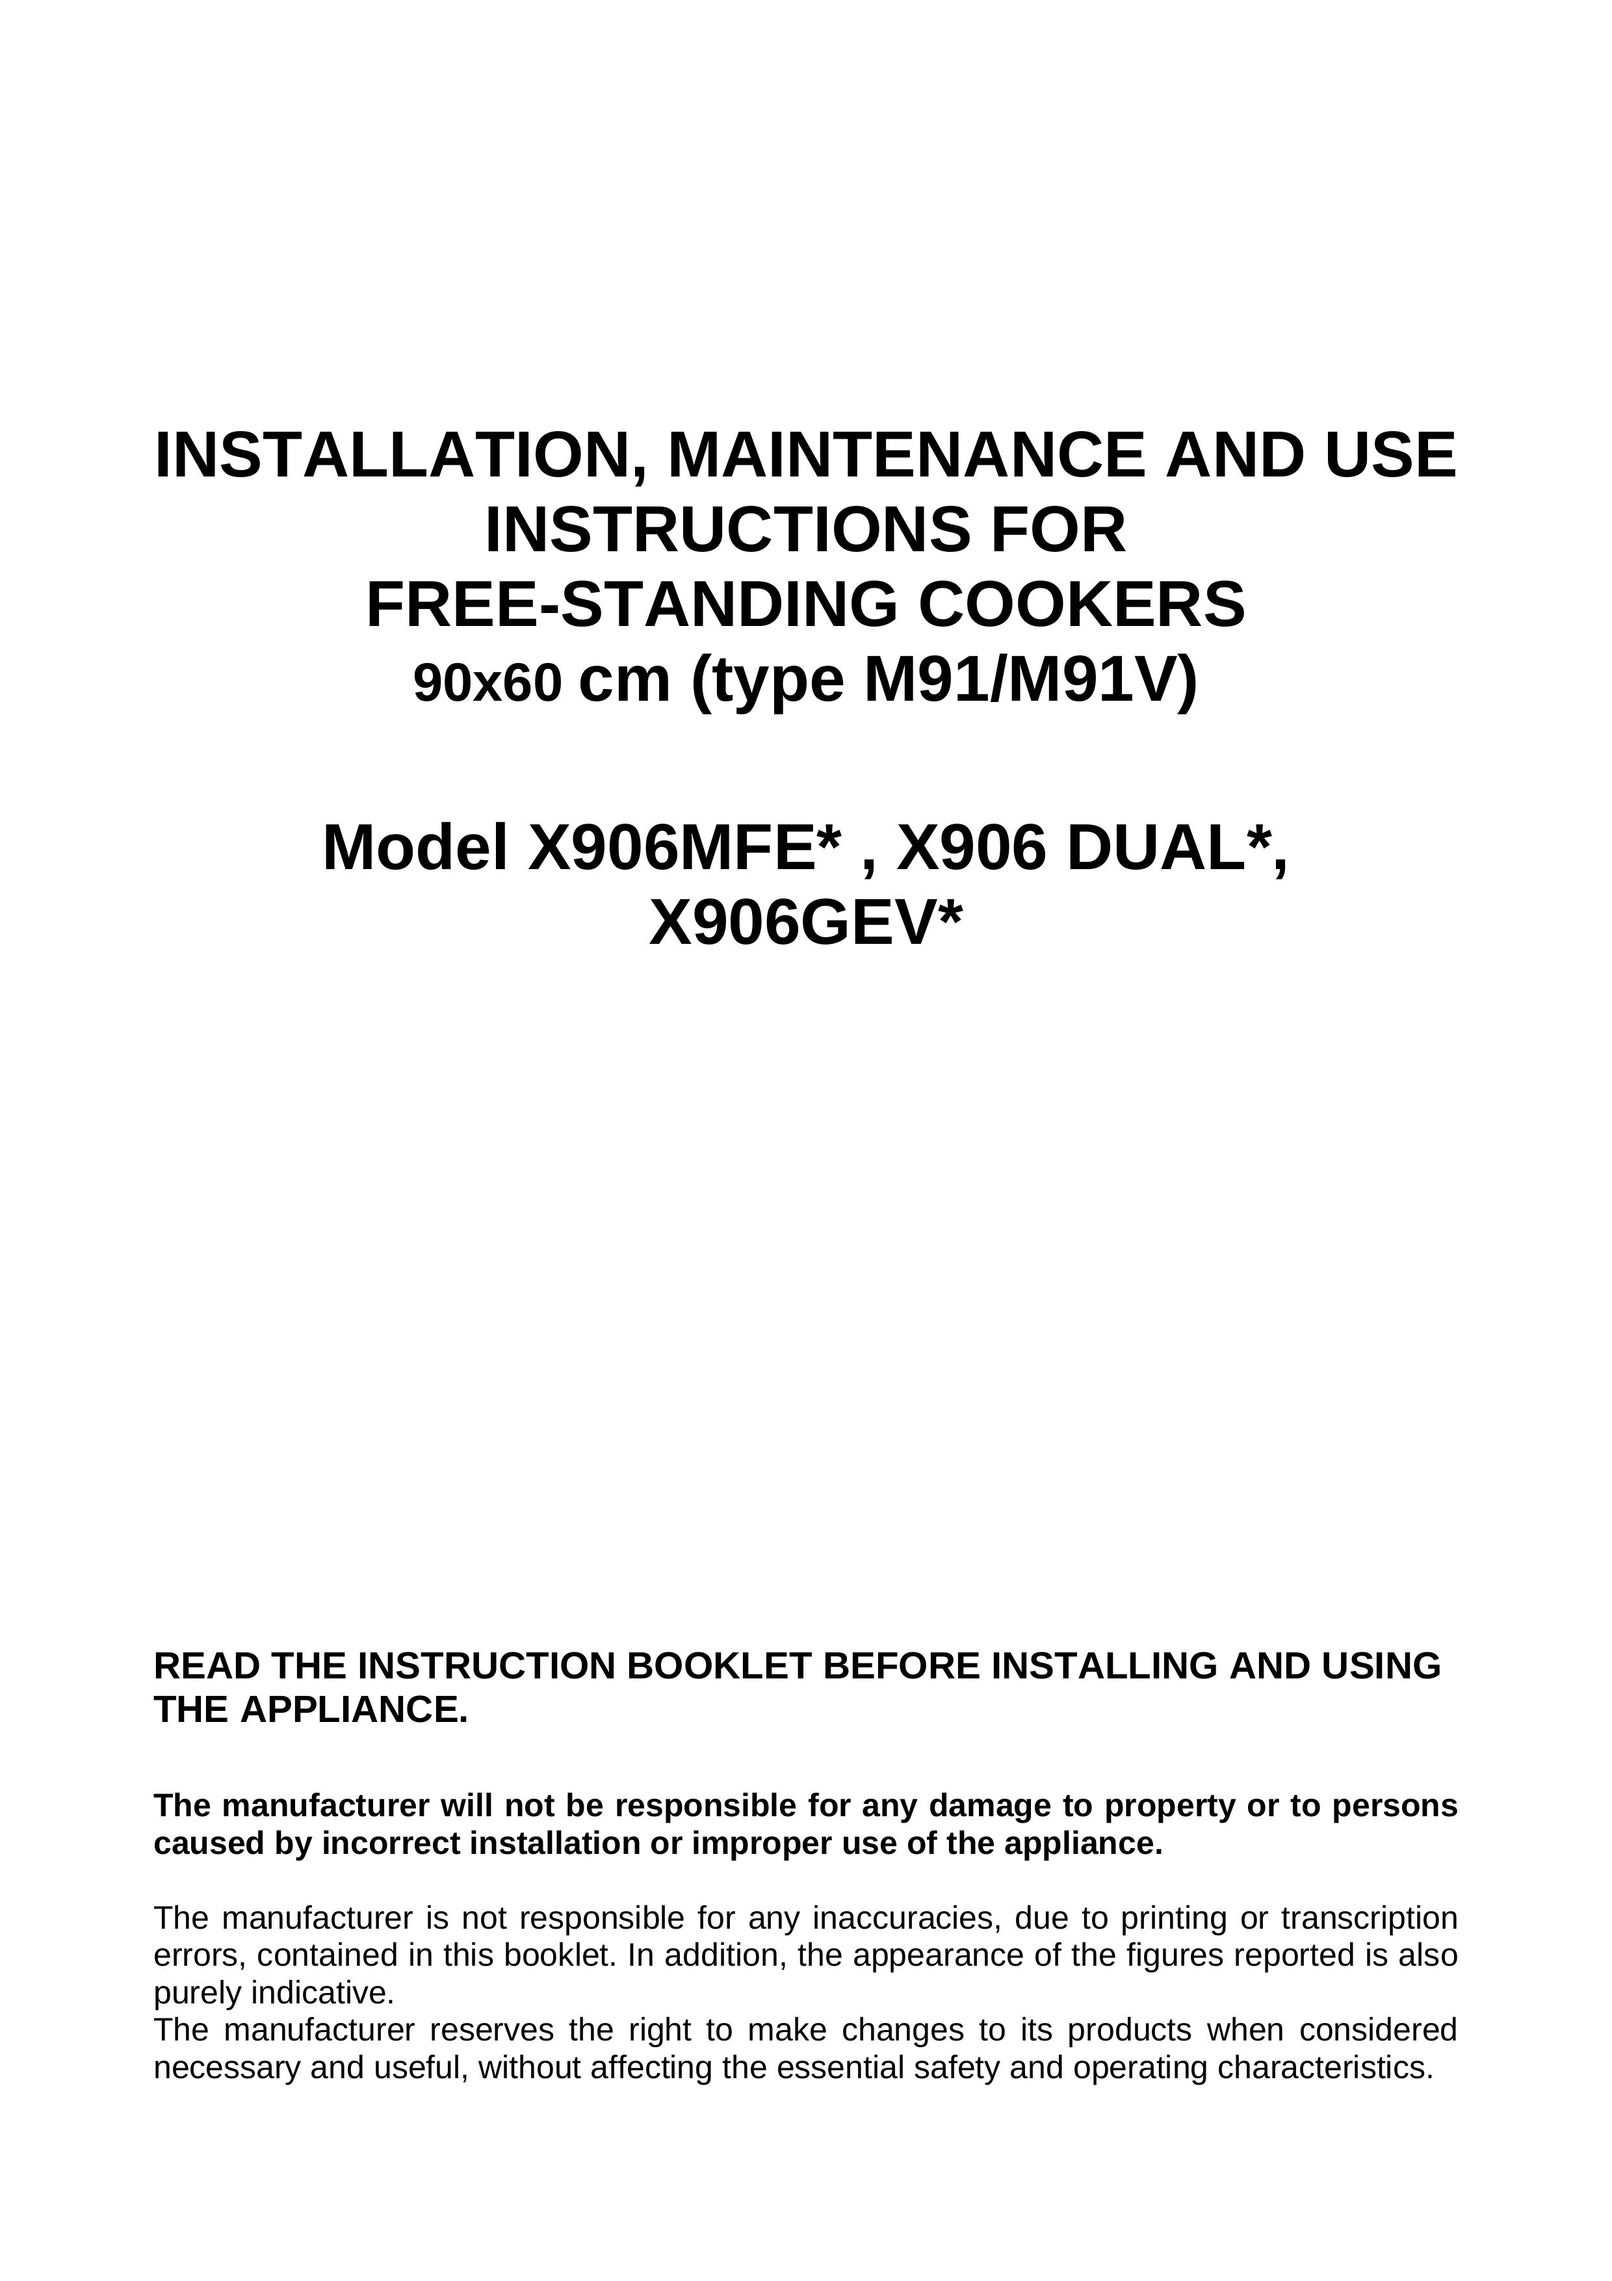 Bertazzoni X906GEV Cooktop User Manual